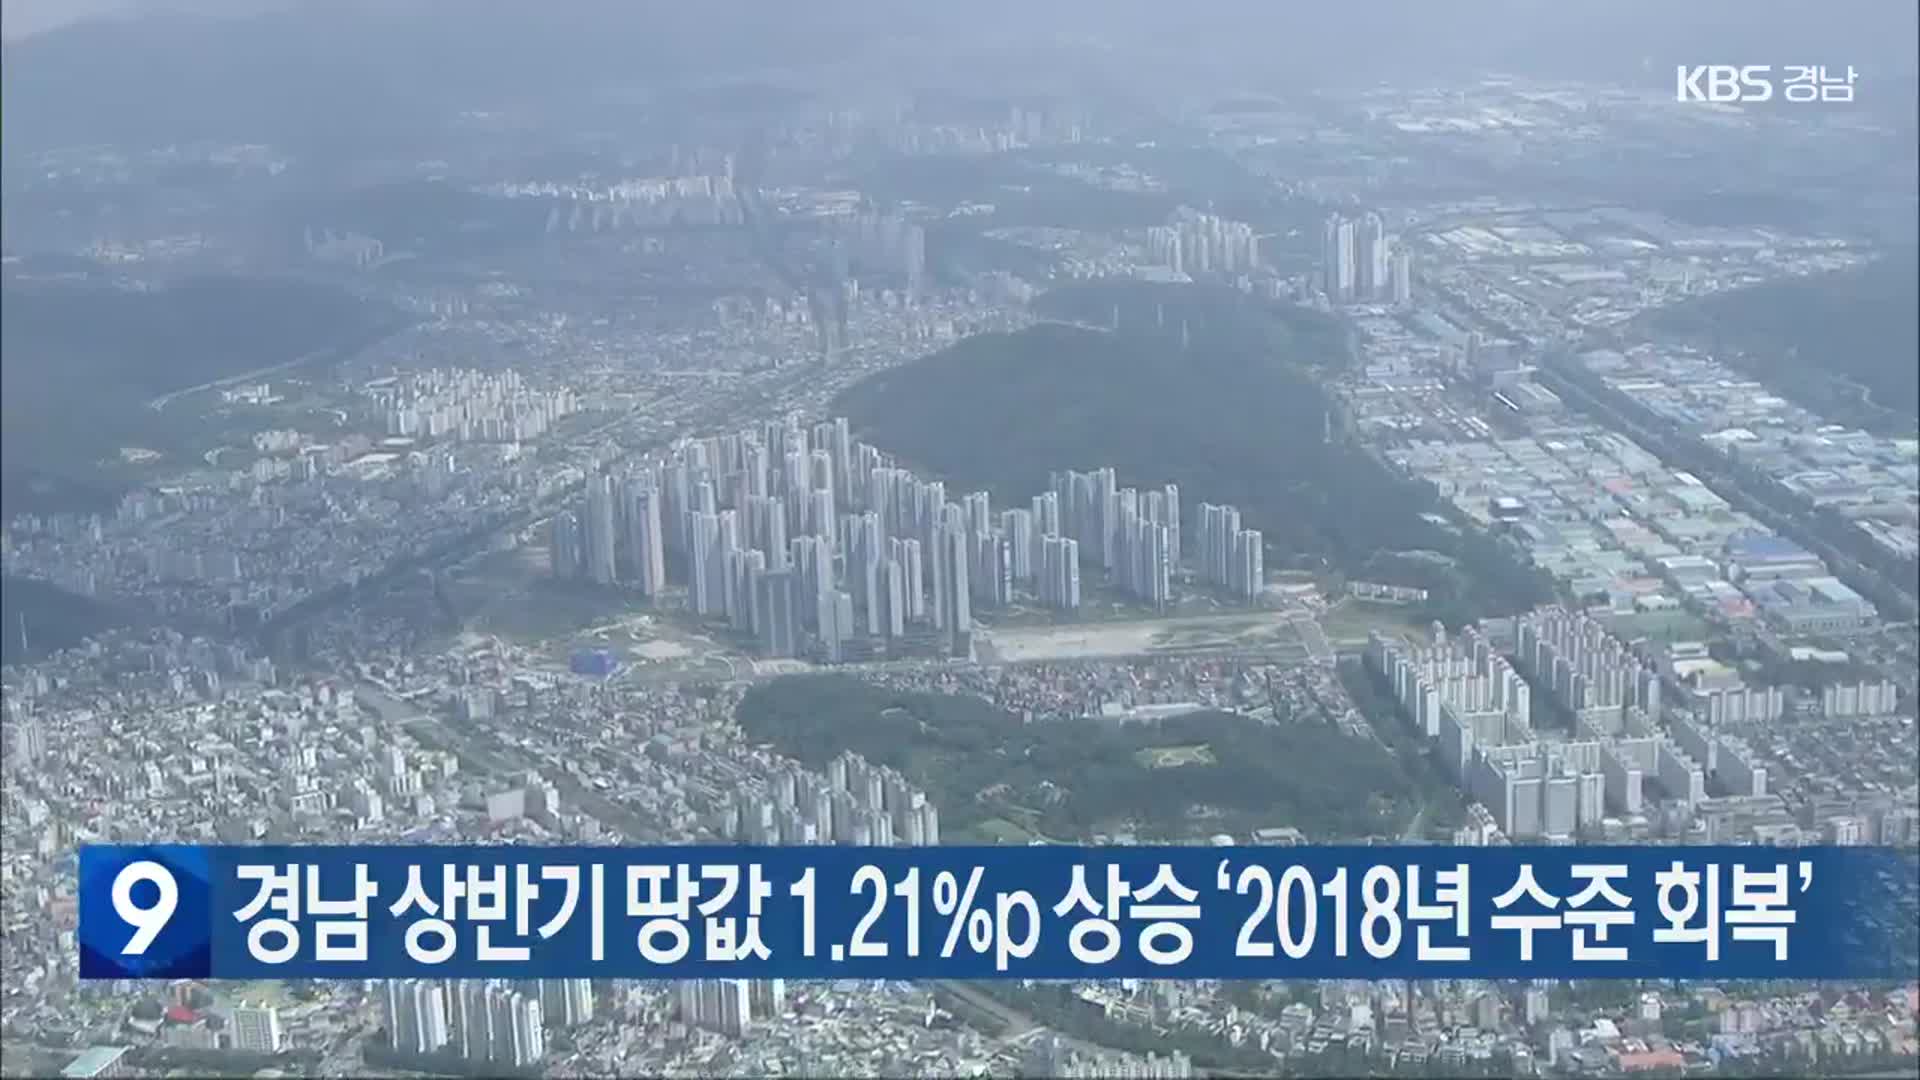 경남 상반기 땅값 1.21%p 상승 ‘2018년 수준 회복’